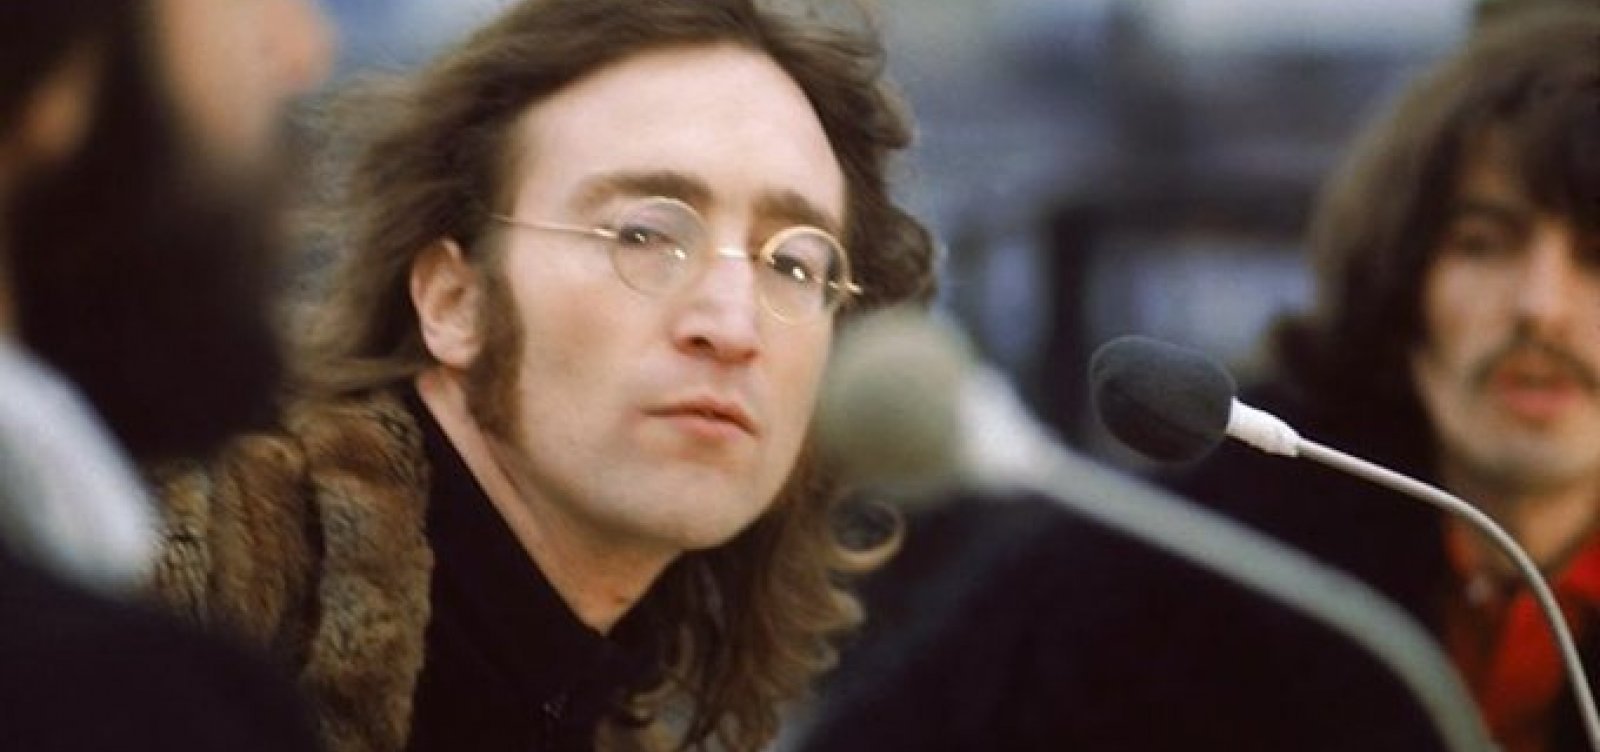 Com auxílio de inteligência artificial, Beatles lança música inédita